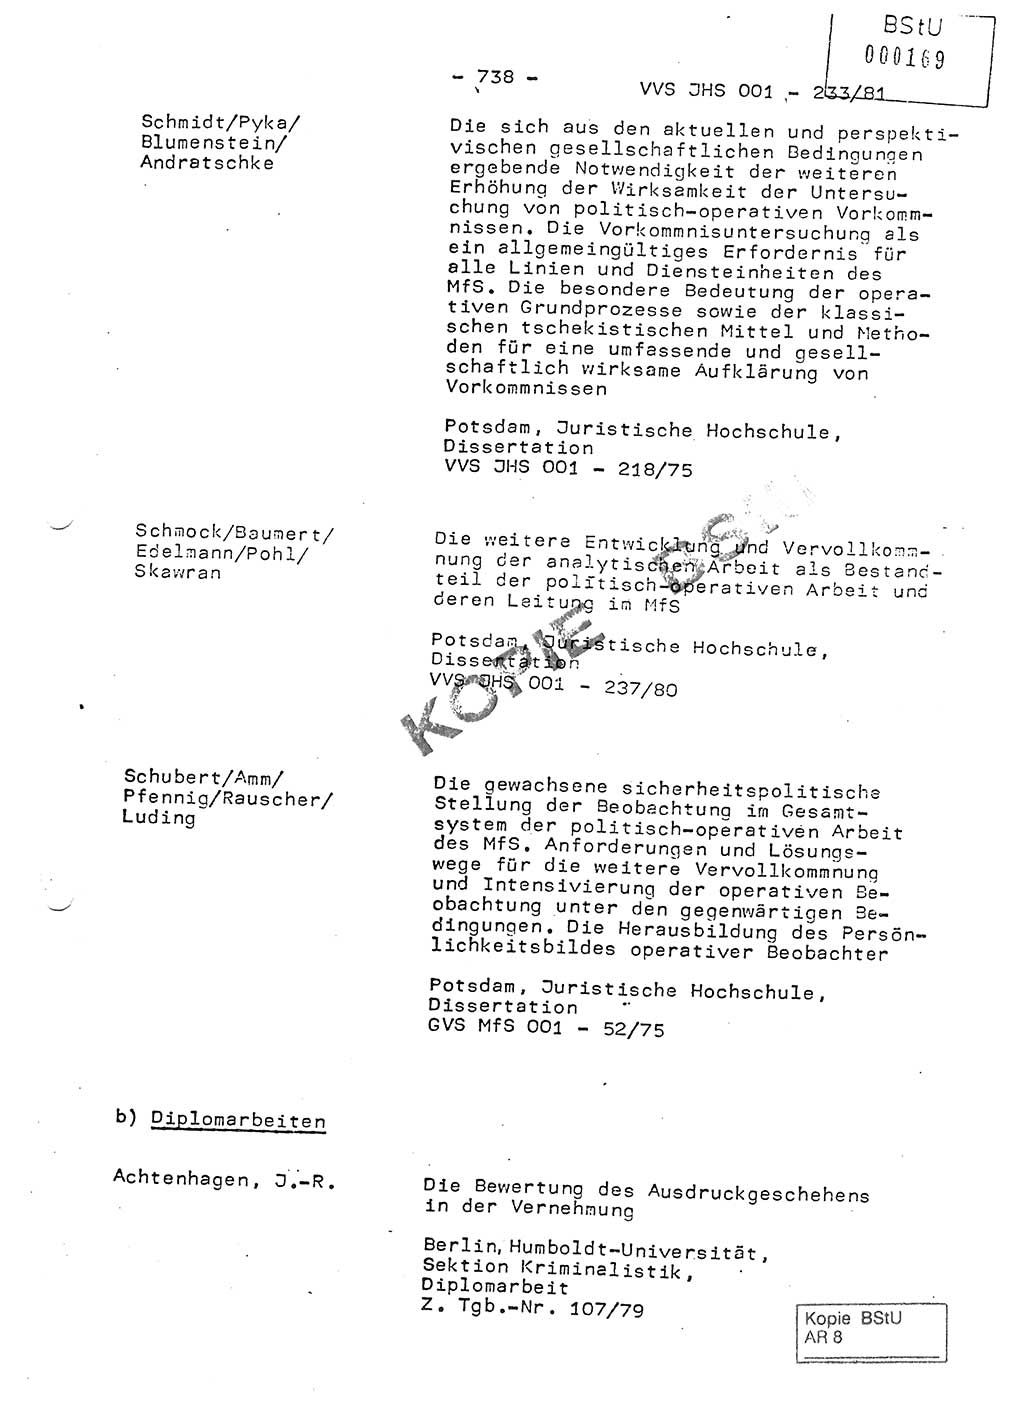 Dissertation Oberstleutnant Horst Zank (JHS), Oberstleutnant Dr. Karl-Heinz Knoblauch (JHS), Oberstleutnant Gustav-Adolf Kowalewski (HA Ⅸ), Oberstleutnant Wolfgang Plötner (HA Ⅸ), Ministerium für Staatssicherheit (MfS) [Deutsche Demokratische Republik (DDR)], Juristische Hochschule (JHS), Vertrauliche Verschlußsache (VVS) o001-233/81, Potsdam 1981, Blatt 738 (Diss. MfS DDR JHS VVS o001-233/81 1981, Bl. 738)